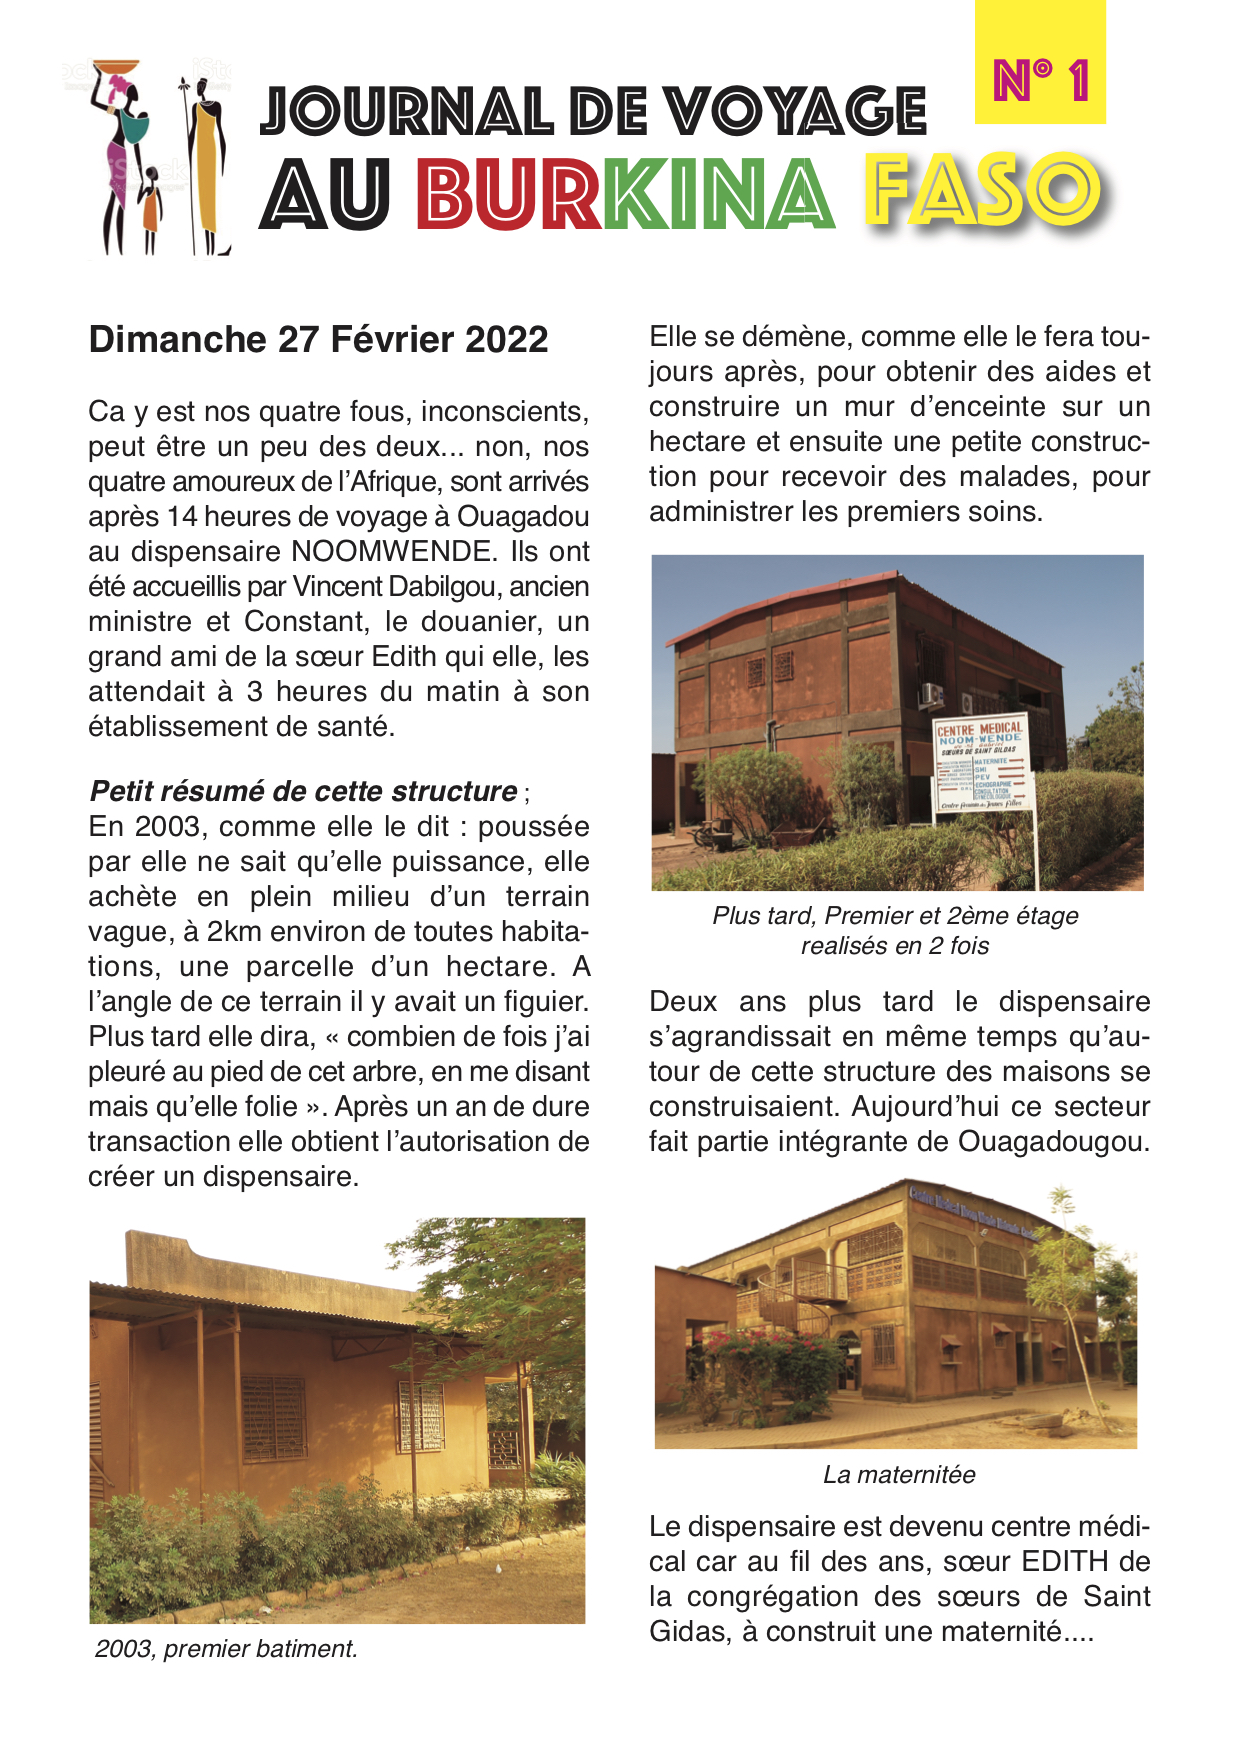 Journal de voyage au Burkina Faso - Dimanche 27 février 2022 - page 1